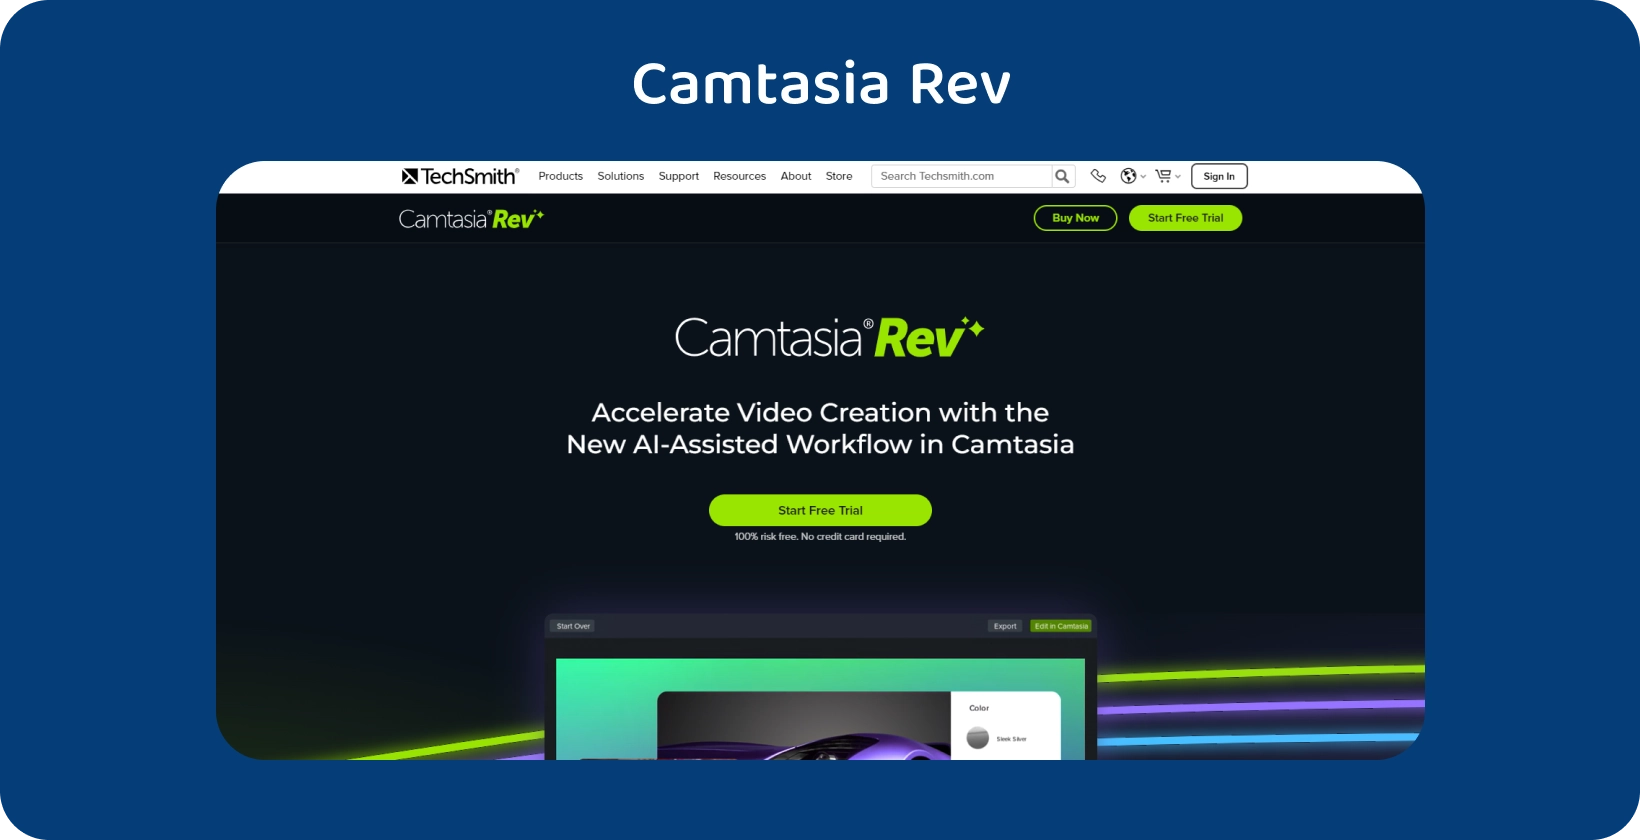 ממשק ציר הזמן של עריכת הווידאו של Camtasia, תוך הדגשת תכונות התמלול והעריכה.